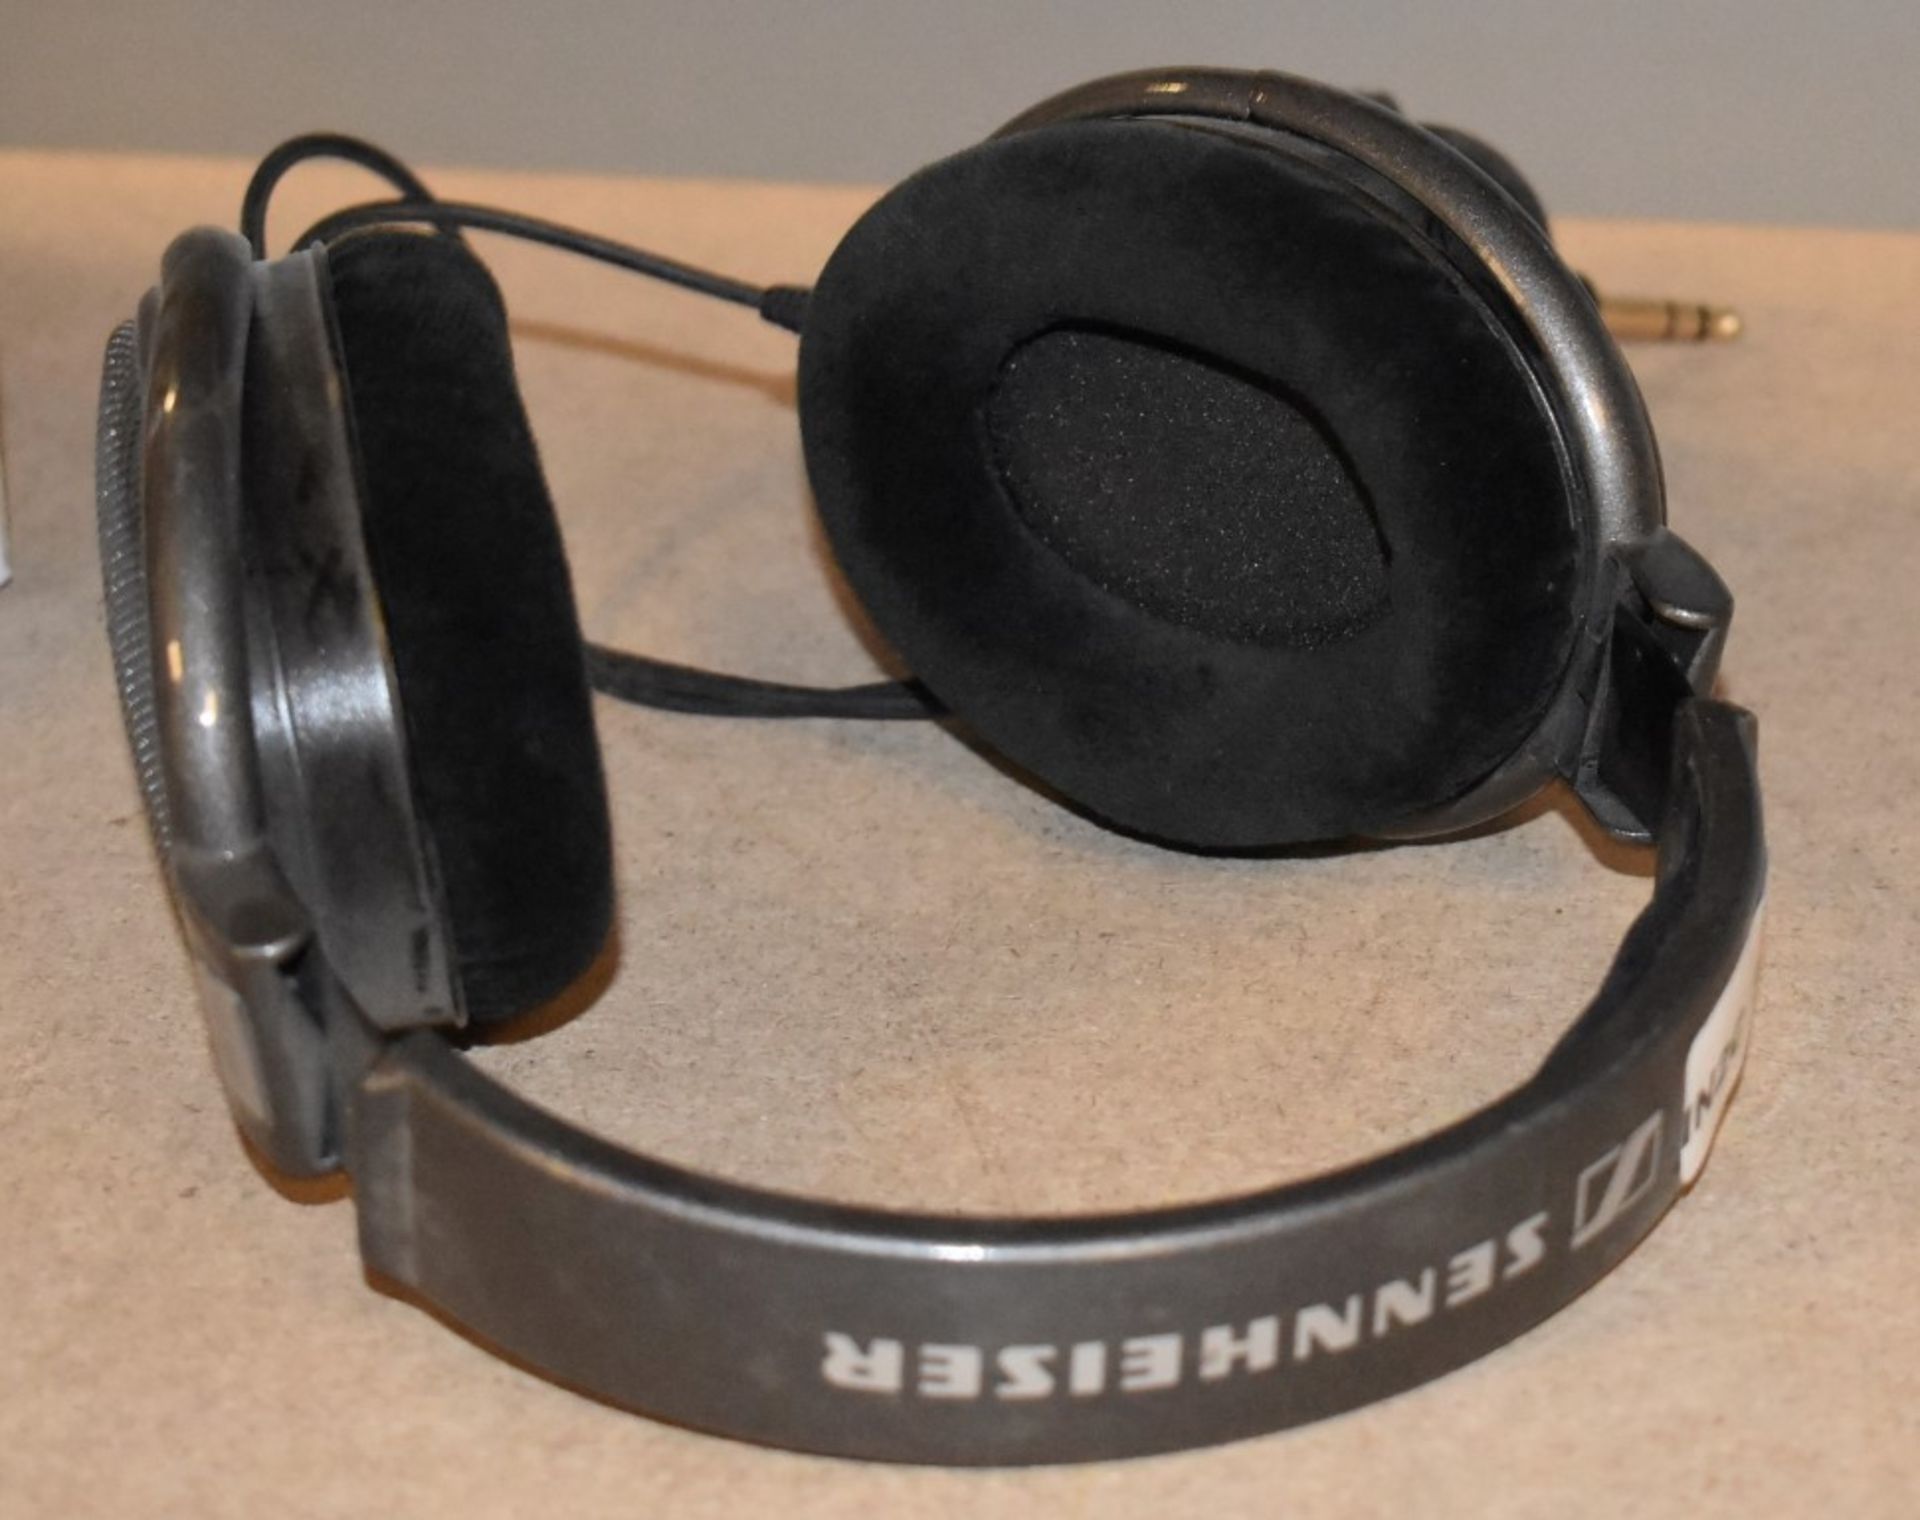 1 x Set of Sennheiser HD650 Headphones - RRP £280 - Image 2 of 5